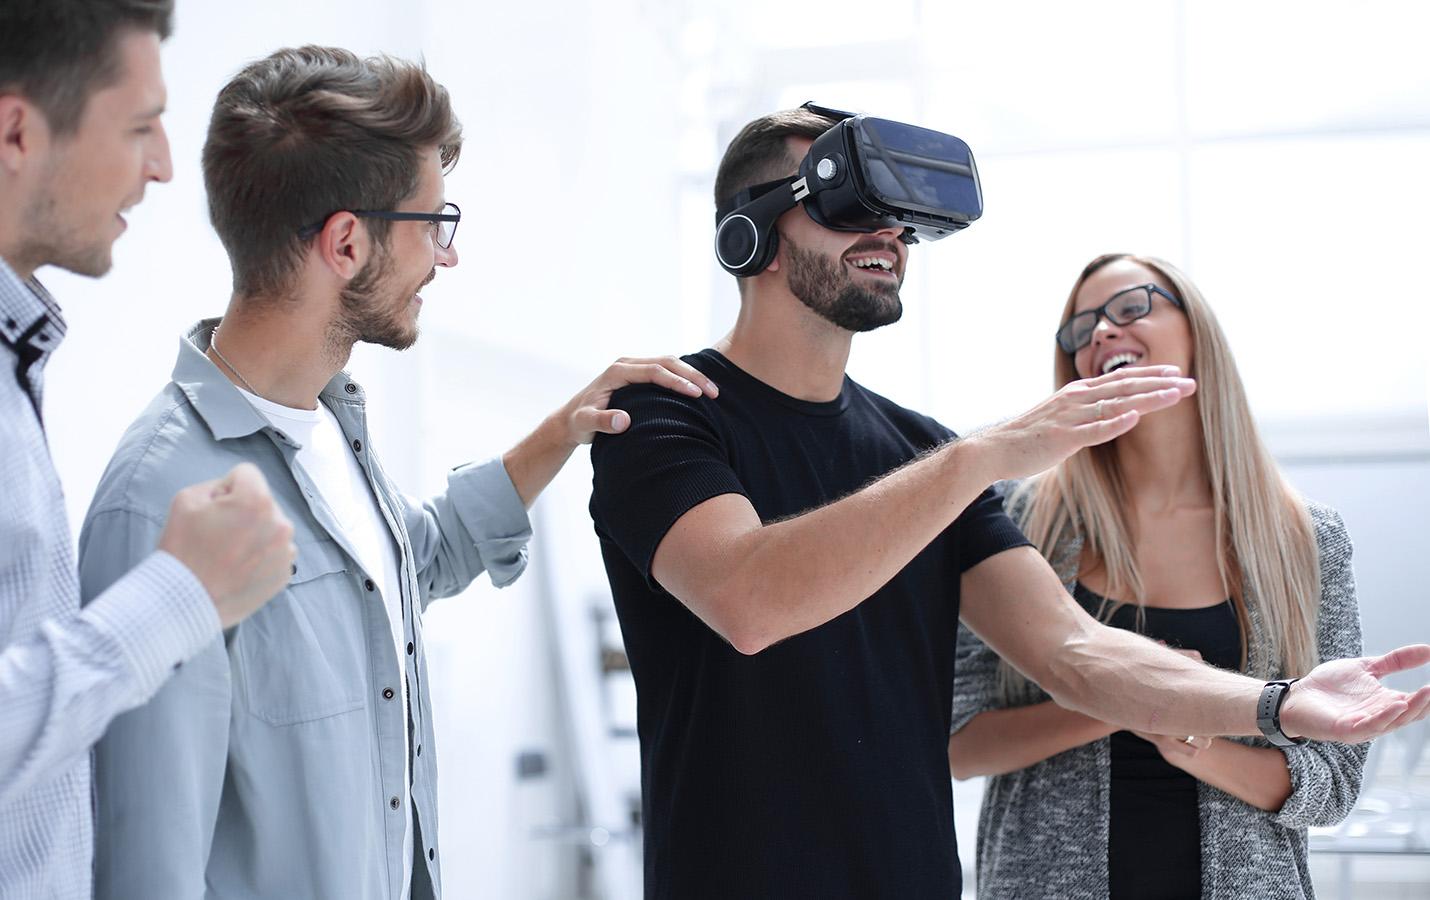 Vier Personen, von denen eine eine VR-Brille trägt